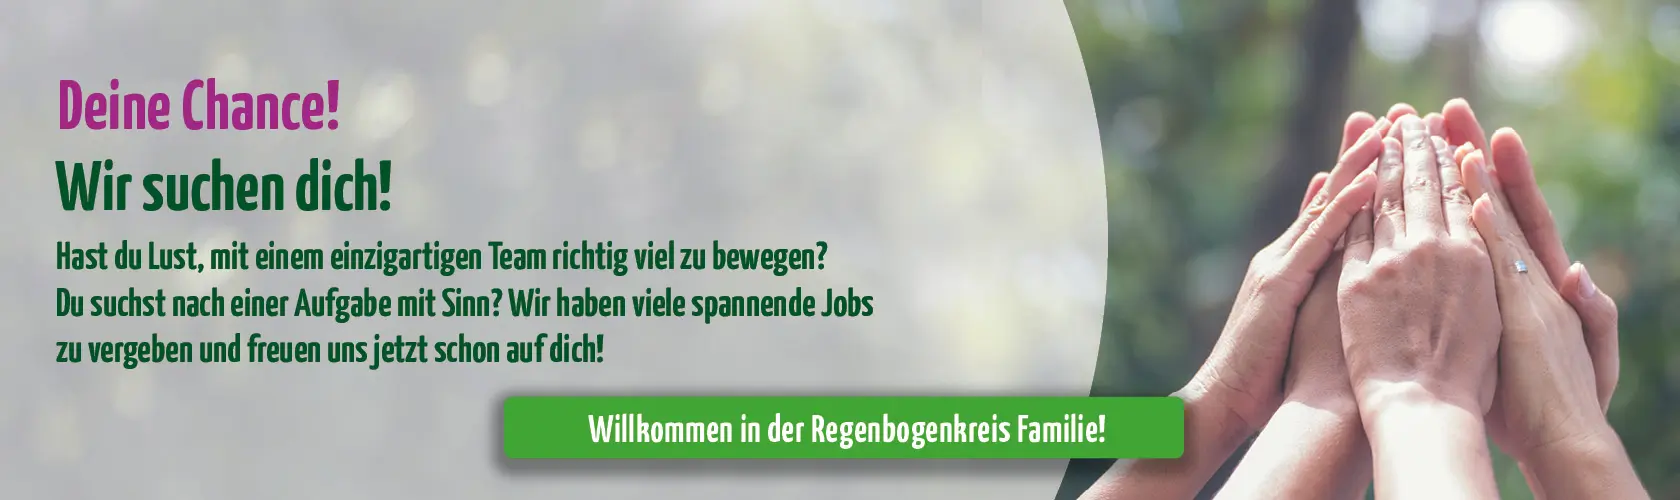 https://jobs.regenbogenkreis.de/